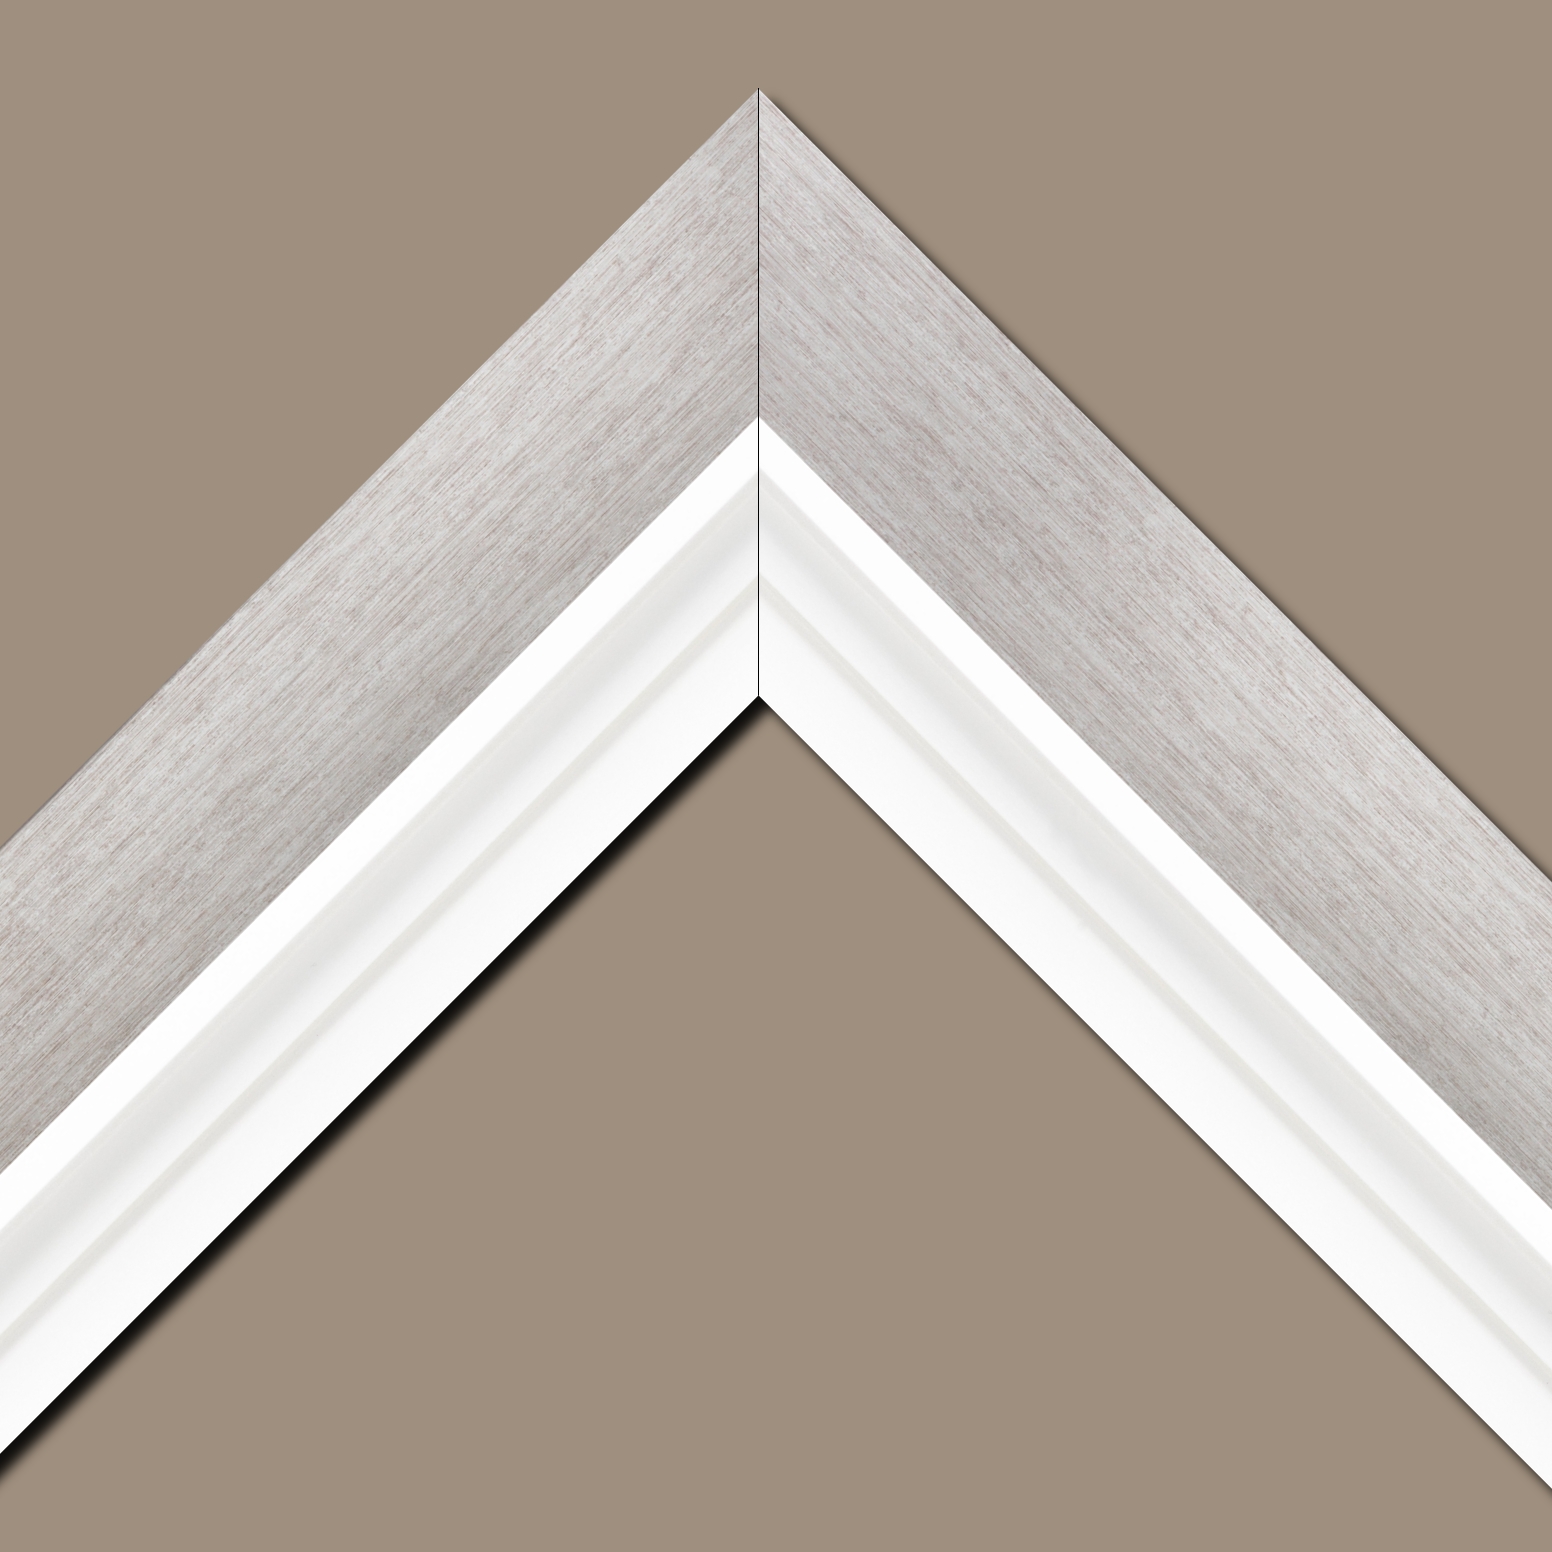 Baguette bois profil plat largeur 6cm couleur argent contemporain satiné haut de gamme + bois caisse américaine profil escalier largeur 4.5cm blanc mat (spécialement conçu pour les châssis d'une épaisseur jusqu’à 2.5cm ) largeur totale du cadre 9.6cm